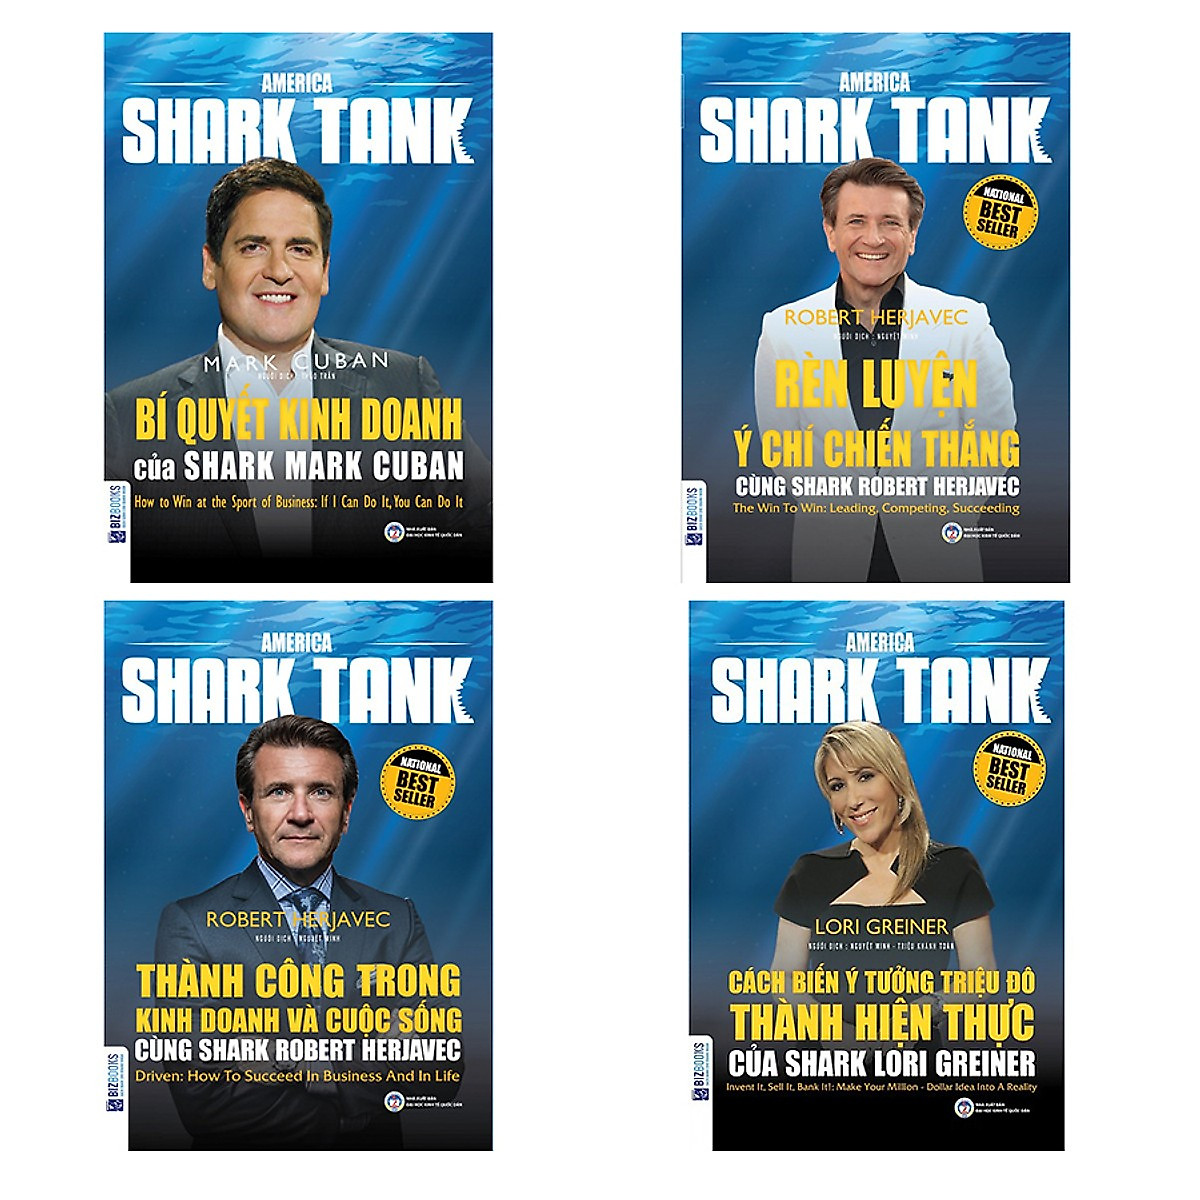 Combo 4 Cuốn Shark Tank(Bí Quyết Kinh Doanh + Rèn Luyện Ý Chí Chiến Thắng + Thành Công Trong Kinh Doanh Và Cuộc Sống + Cách Biến Ý Tưởng Triệu Đô Thành Hiện Thực)